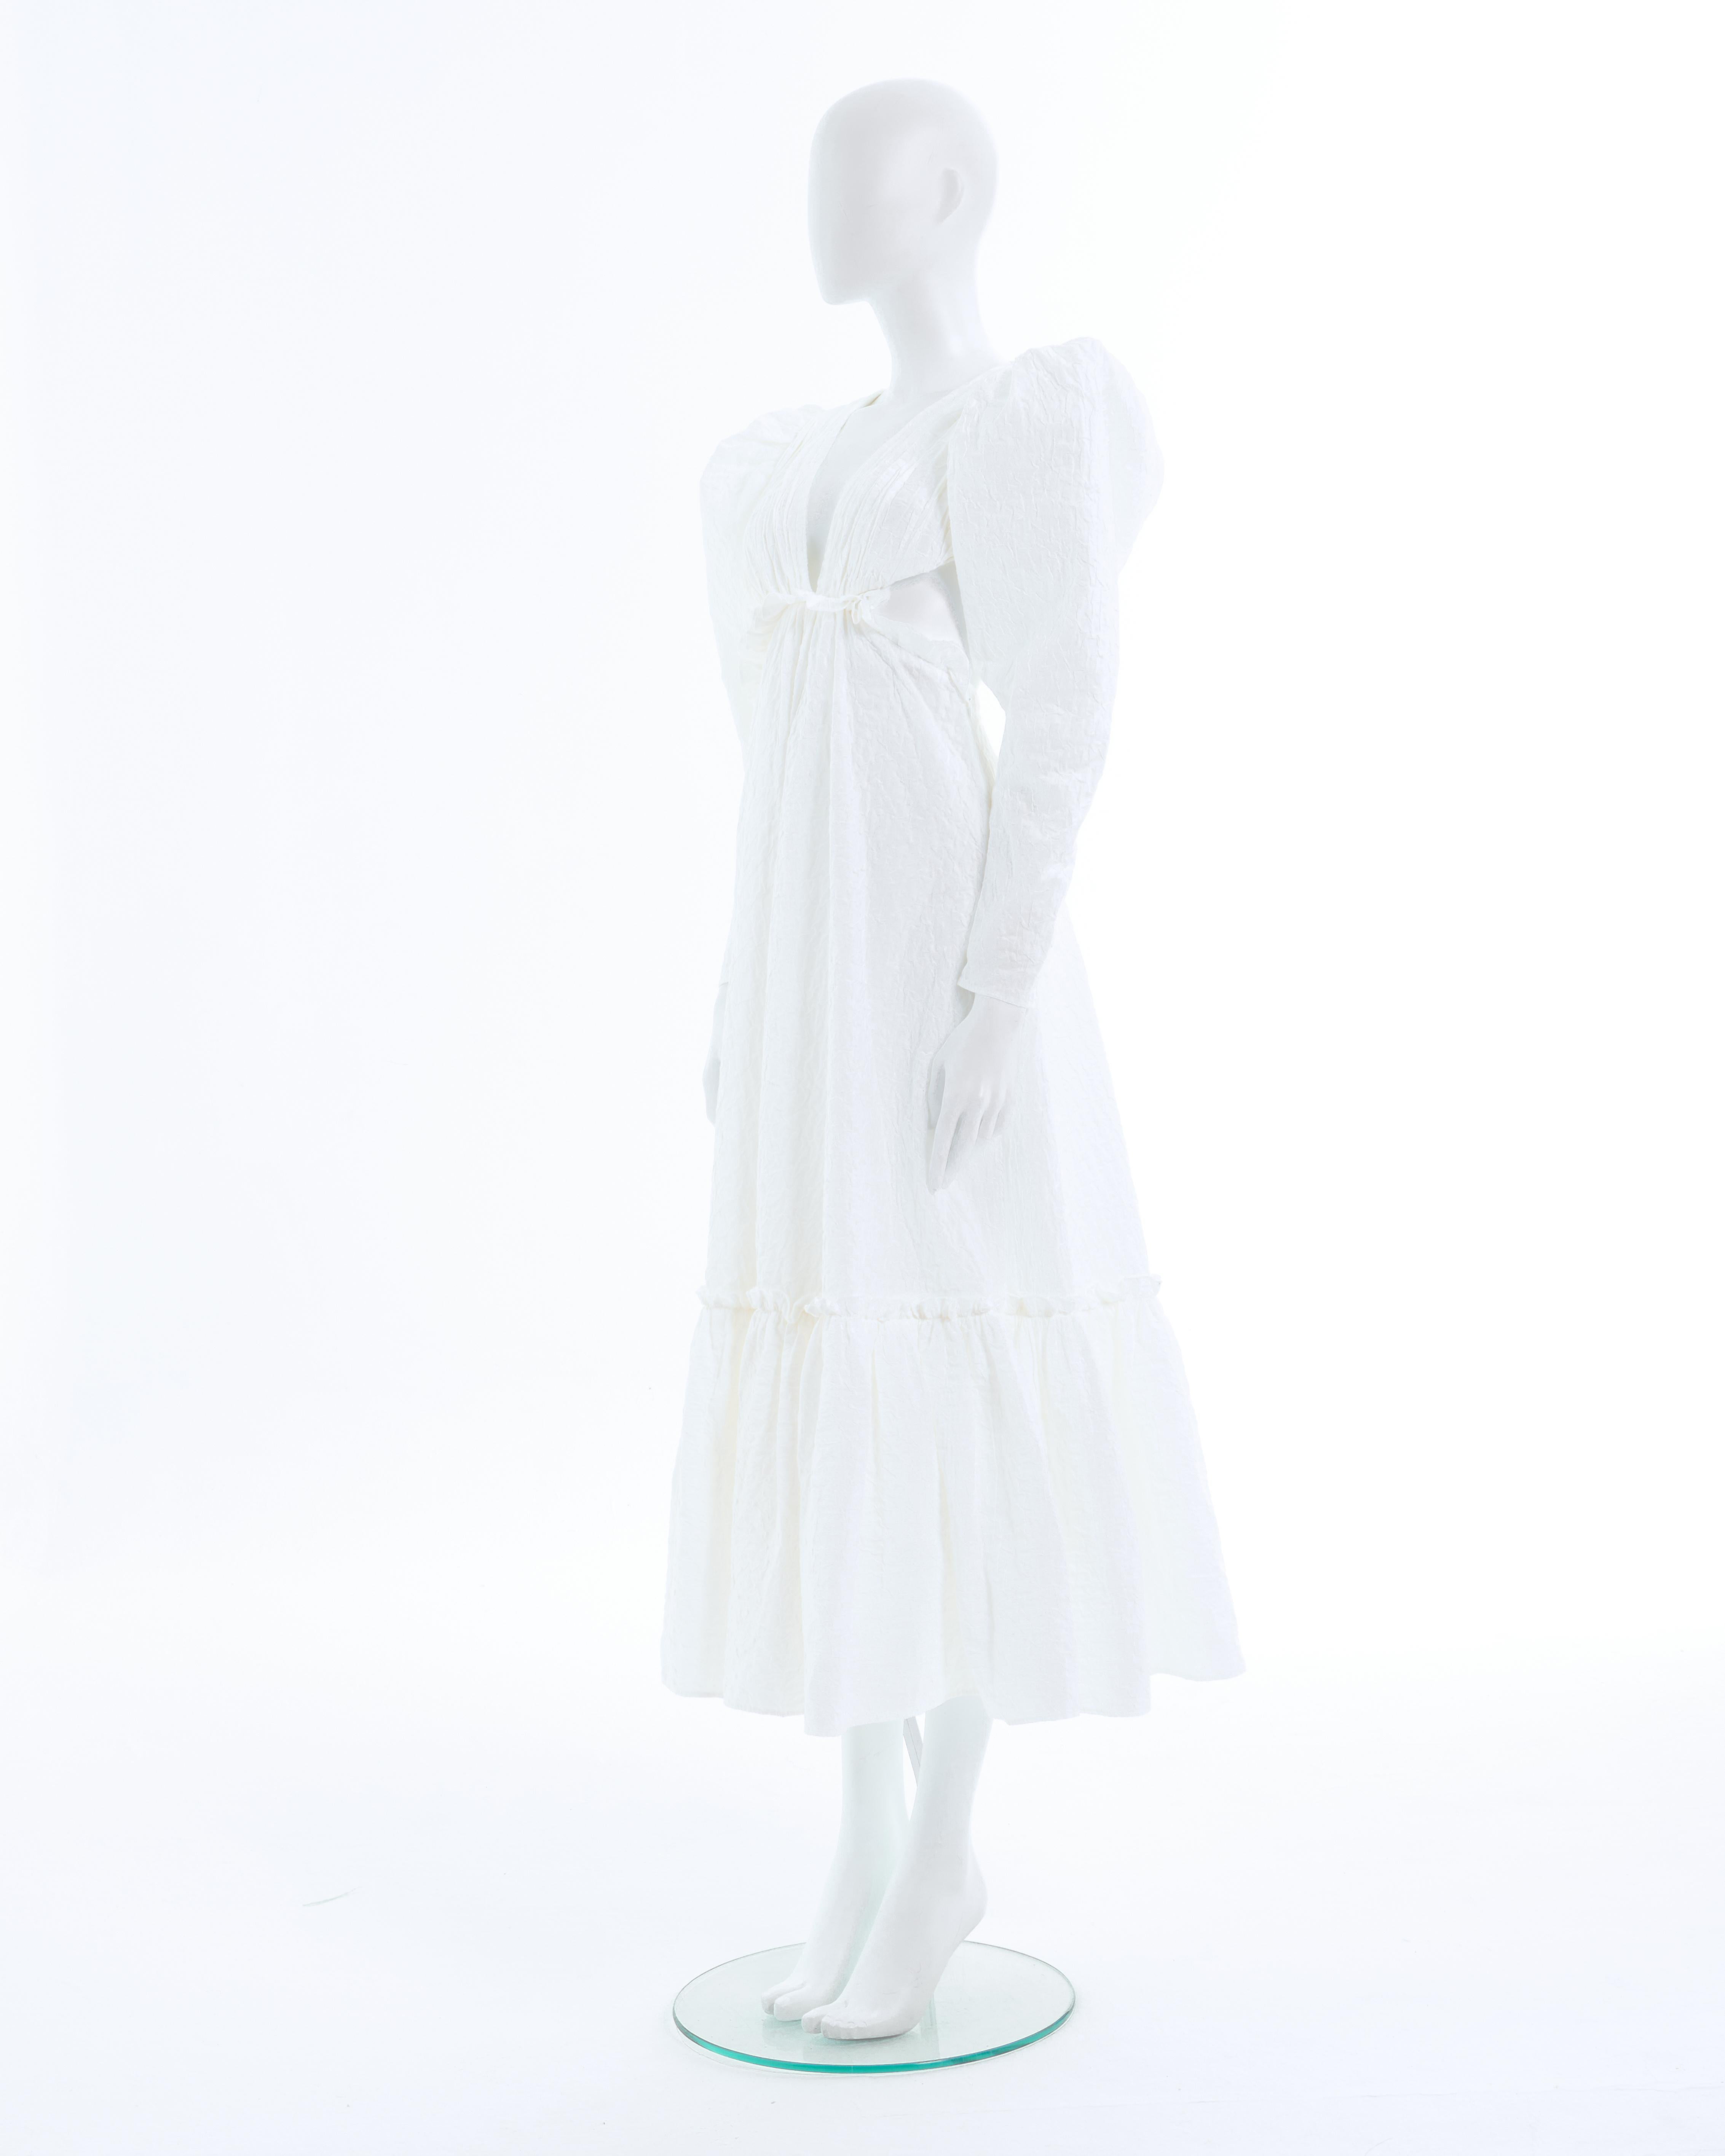 - Robe longue en coton mélangé lacé blanc Yves Saint Laurent Design/One Tom Ford
- Vendu par Skof.Archive 
- Printemps-été 2001 
- Robe longue à manches bouffantes en coton blanc
- V.I.I.I. profond devant et dans le dos 
- Fermeture à lacets au dos